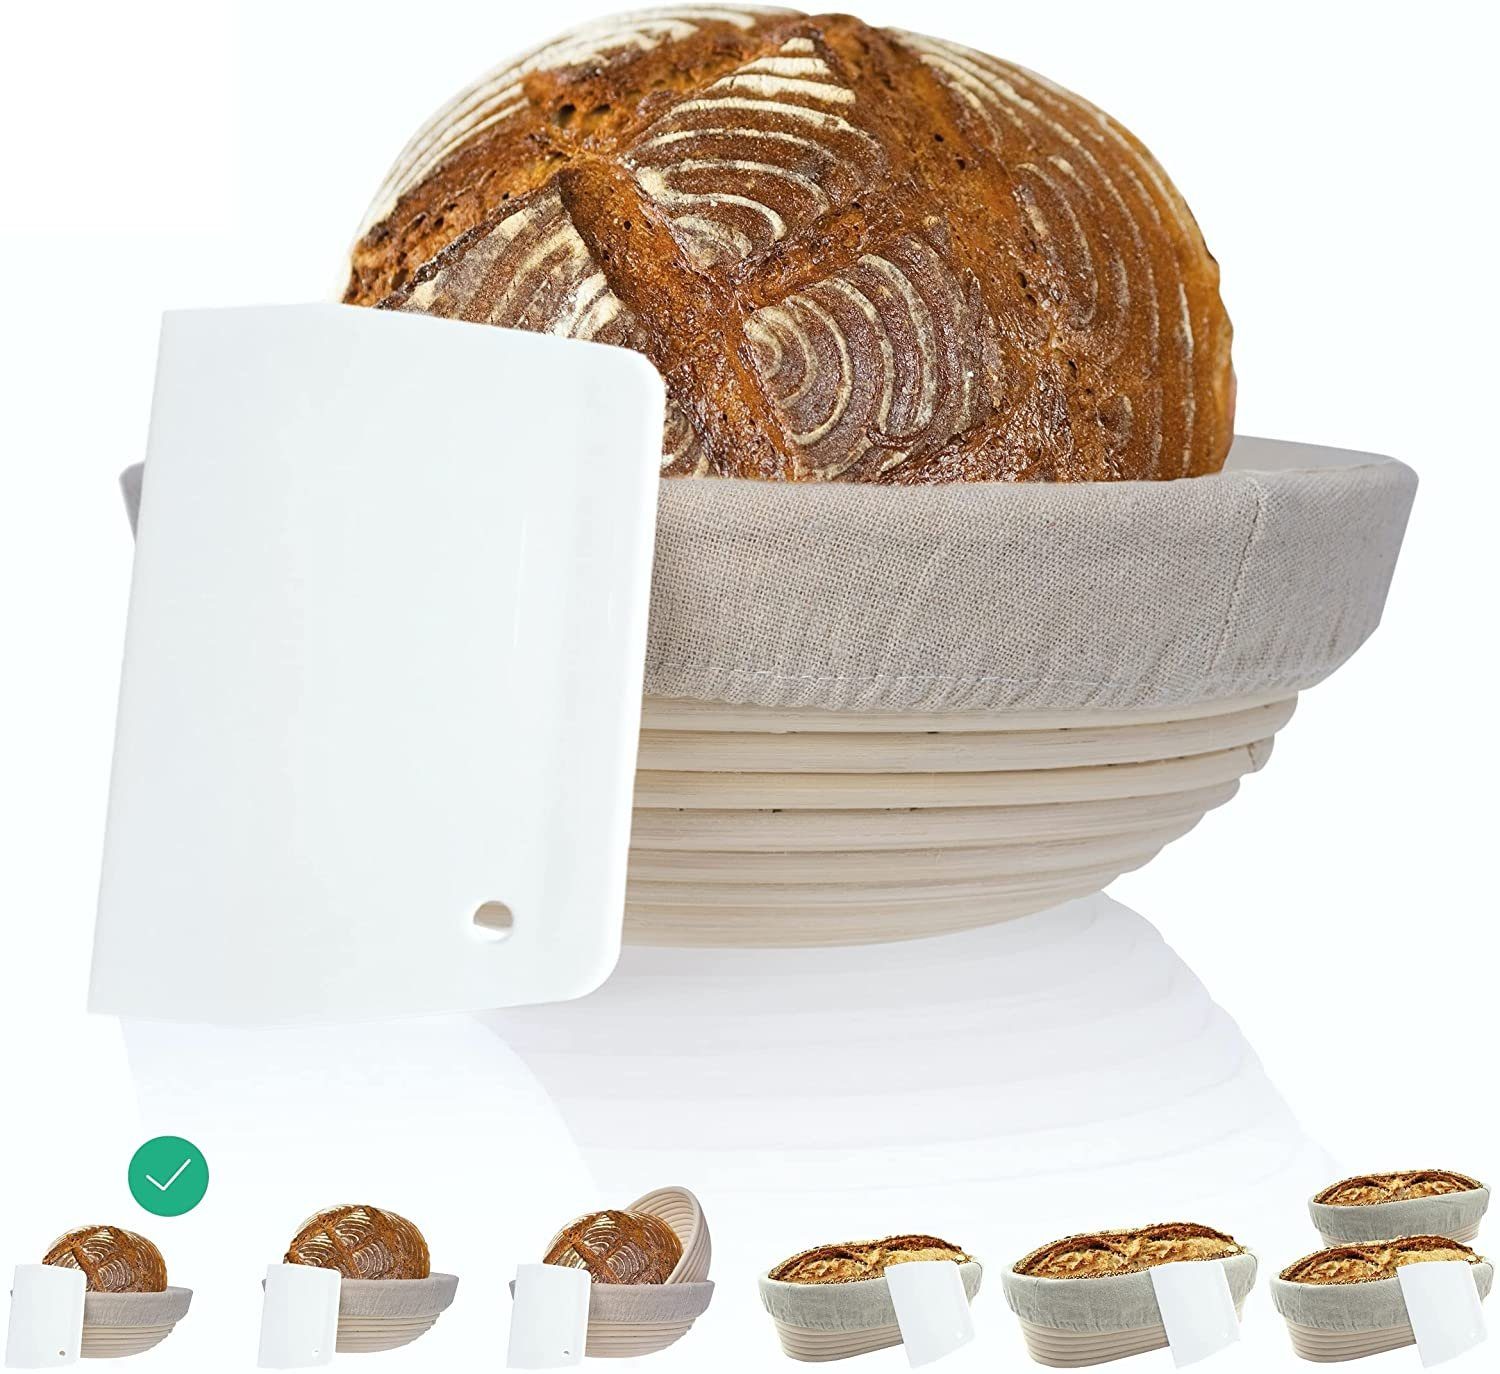 Brotgärkorb Gärkorb  0,8  1,0  1,5  2,0  4,0 Kg Gärform Brotkorb Bakery 